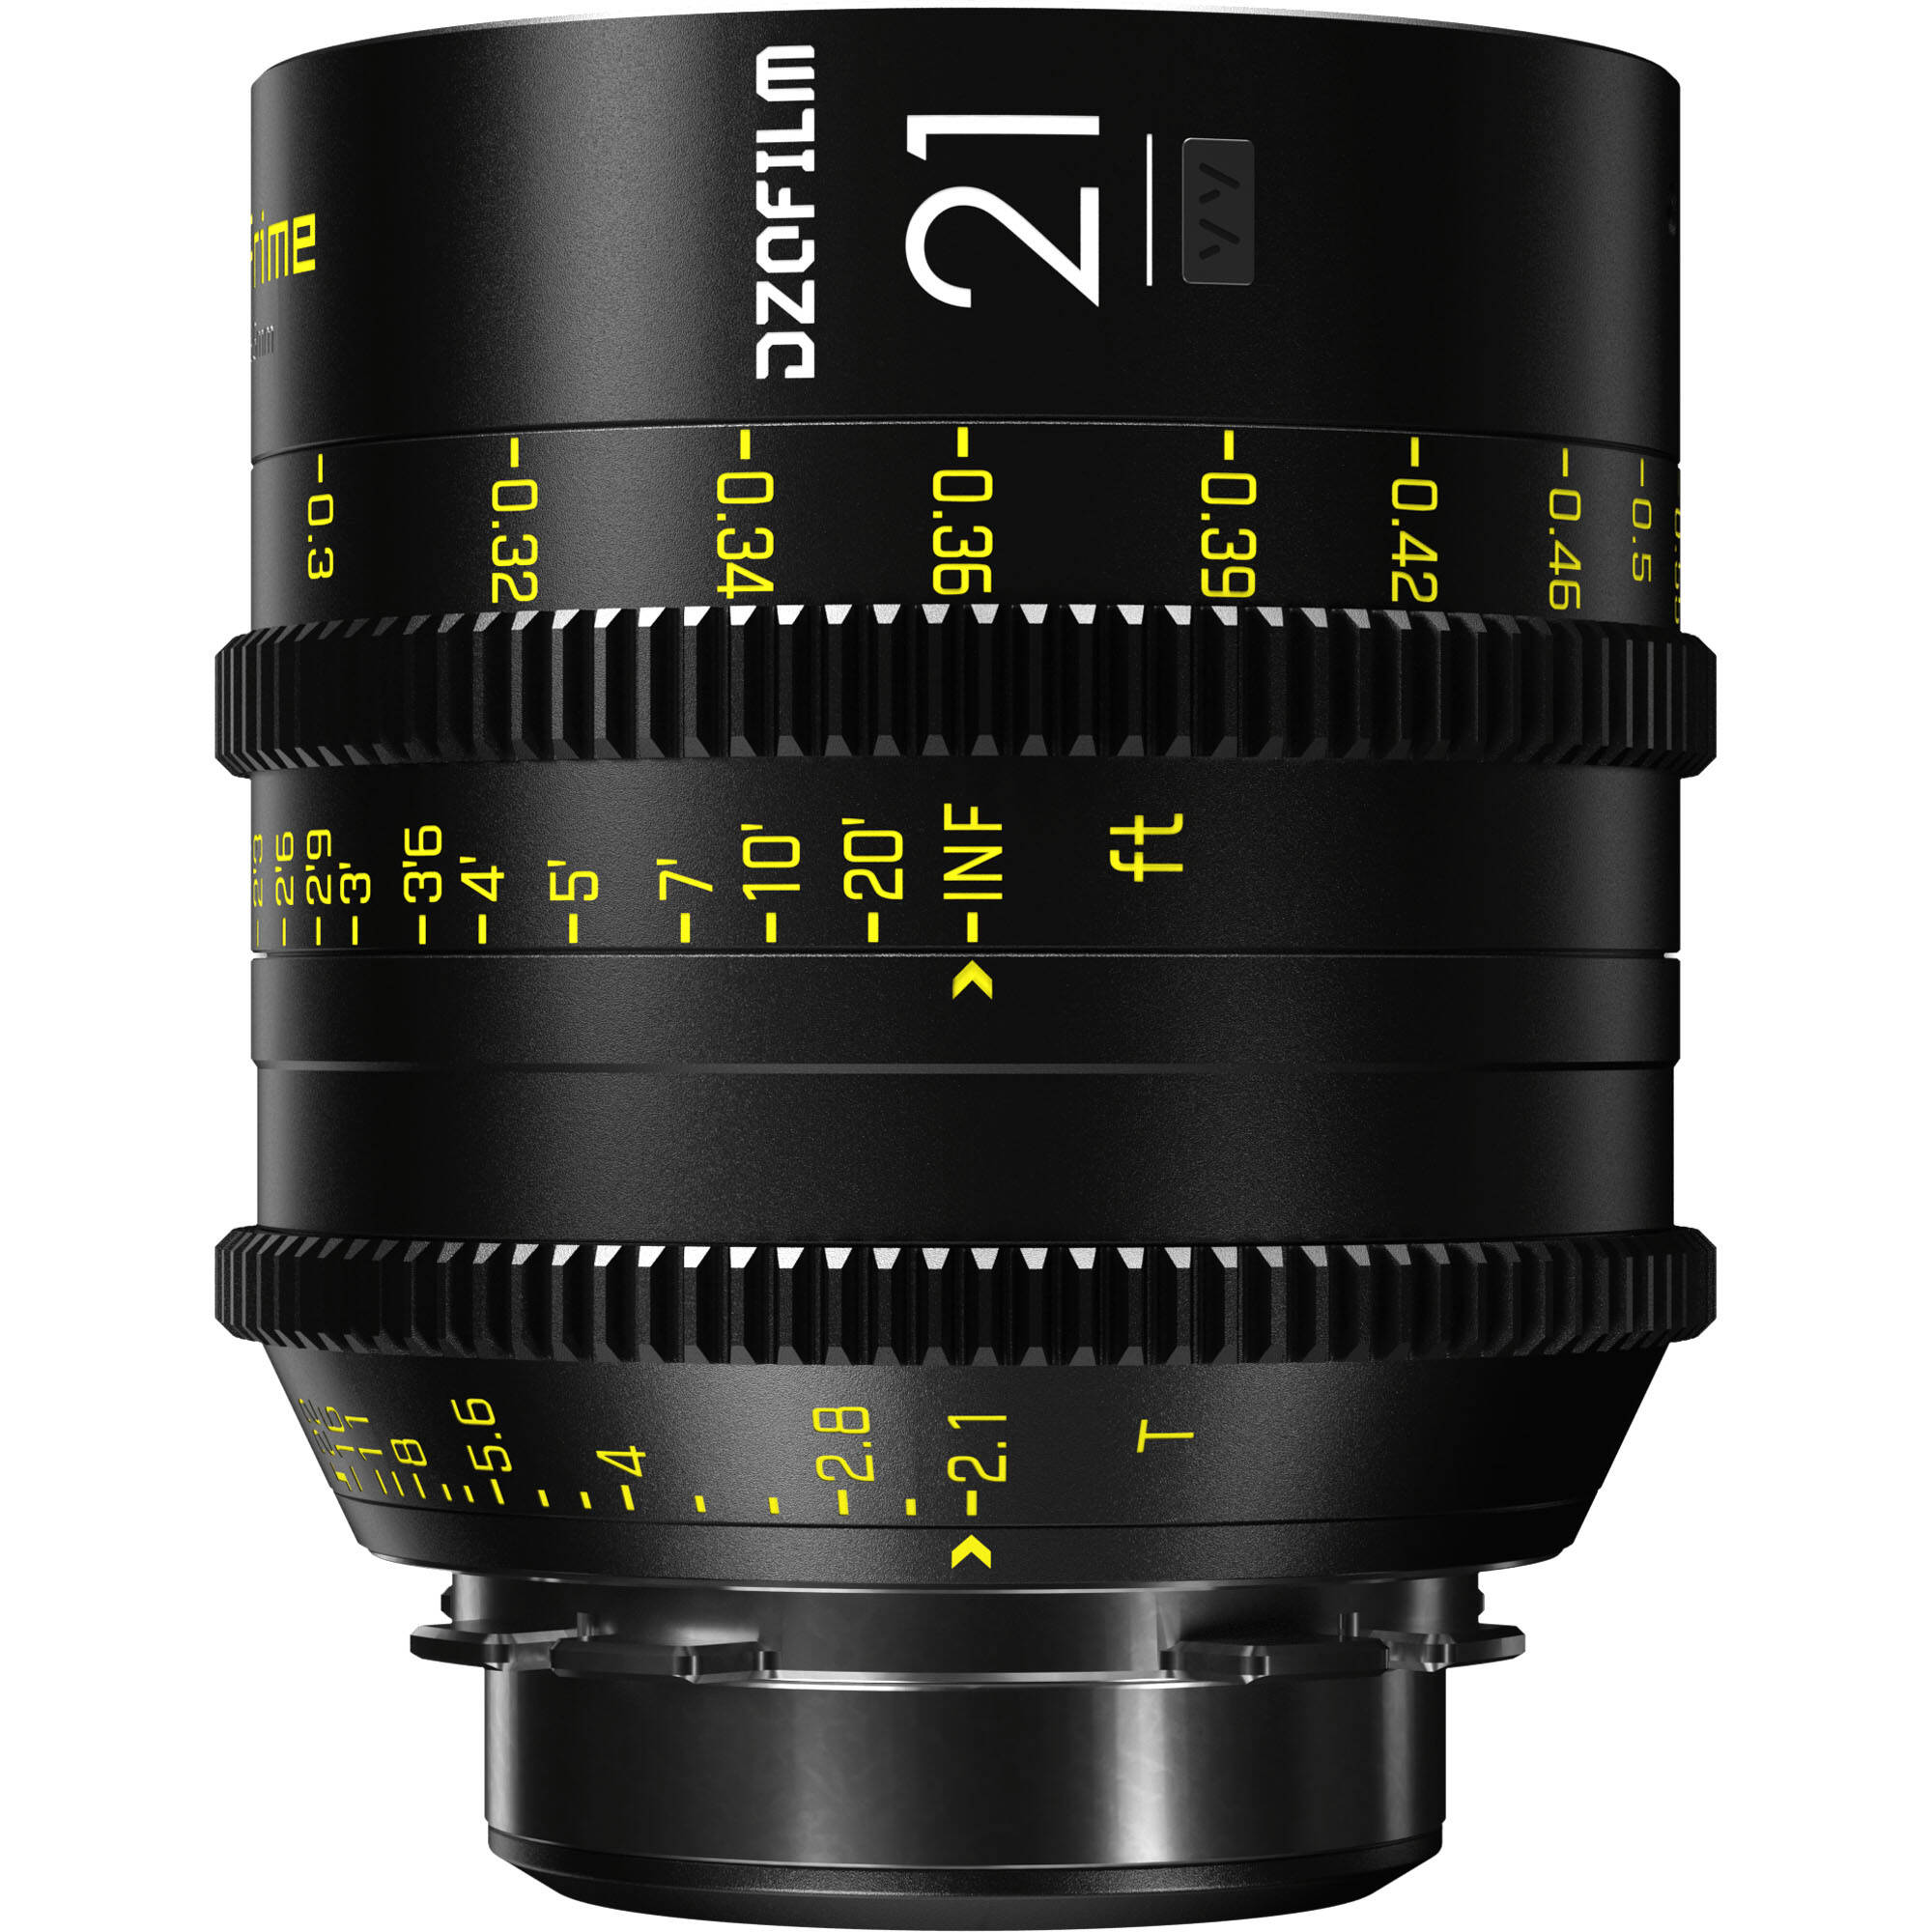 DZOFILM VESPID 21 mm T2.1 Lens - support PL avec adaptateur Canon EF